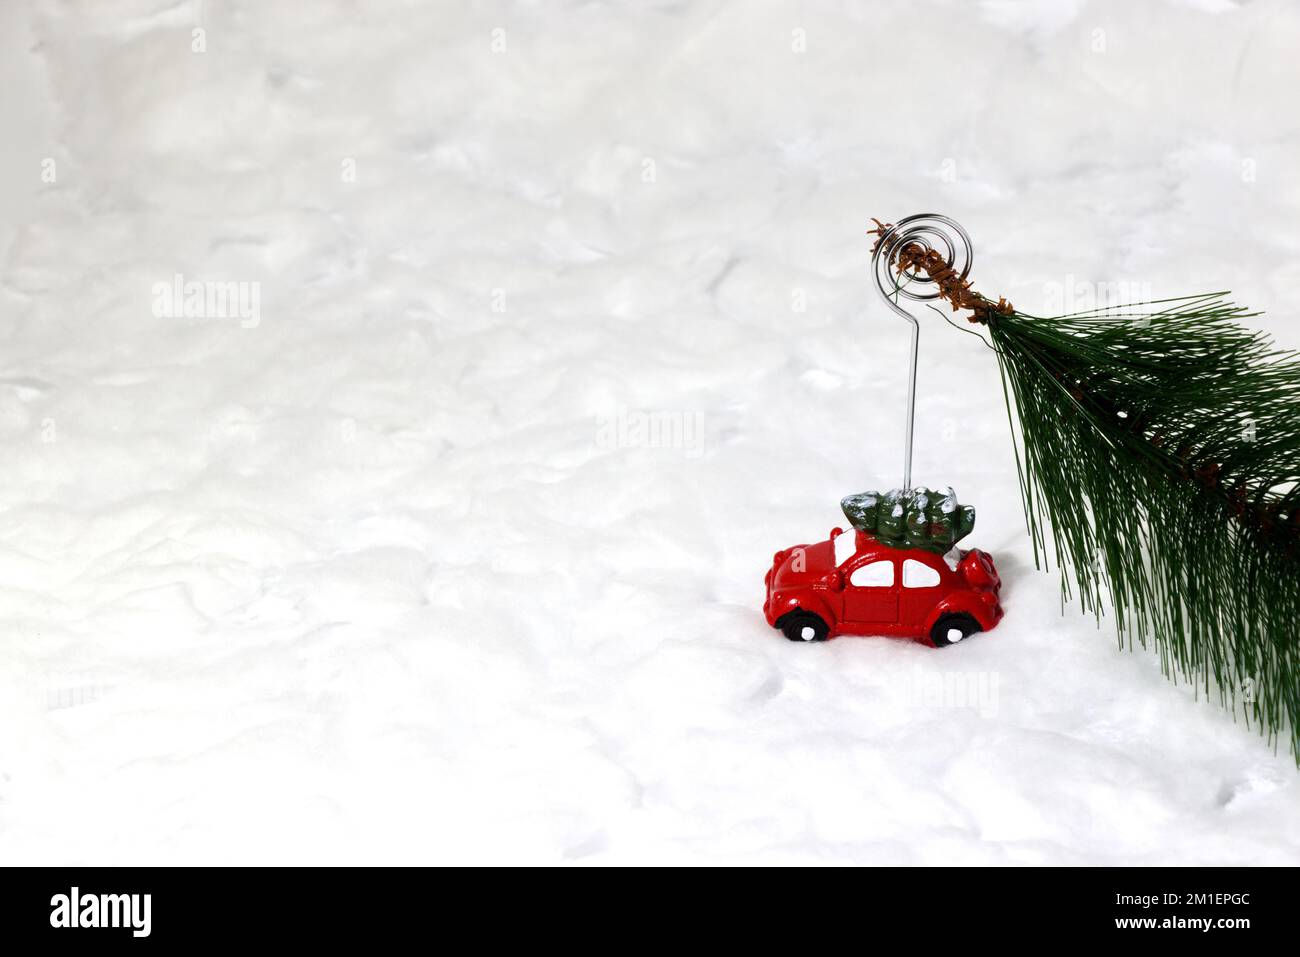 Voiture tirant un arbre de Noël dans la neige, concept de vacances créatif, design artistique minimal Banque D'Images